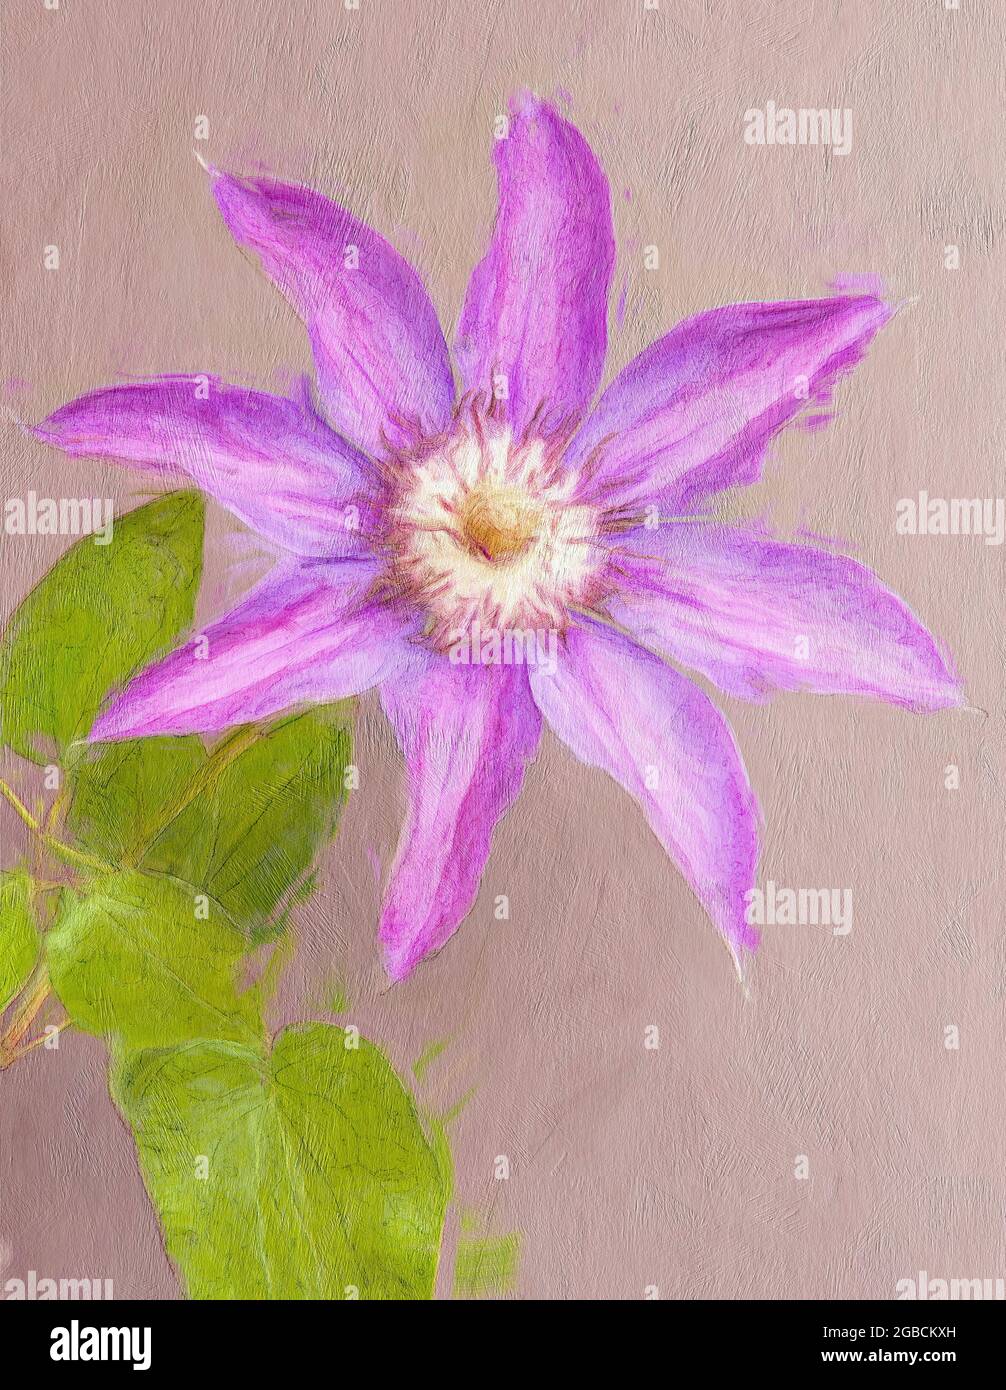 Gros plan de la fleur de clemetis donné un effet de peinture avec une texture ajoutée Banque D'Images